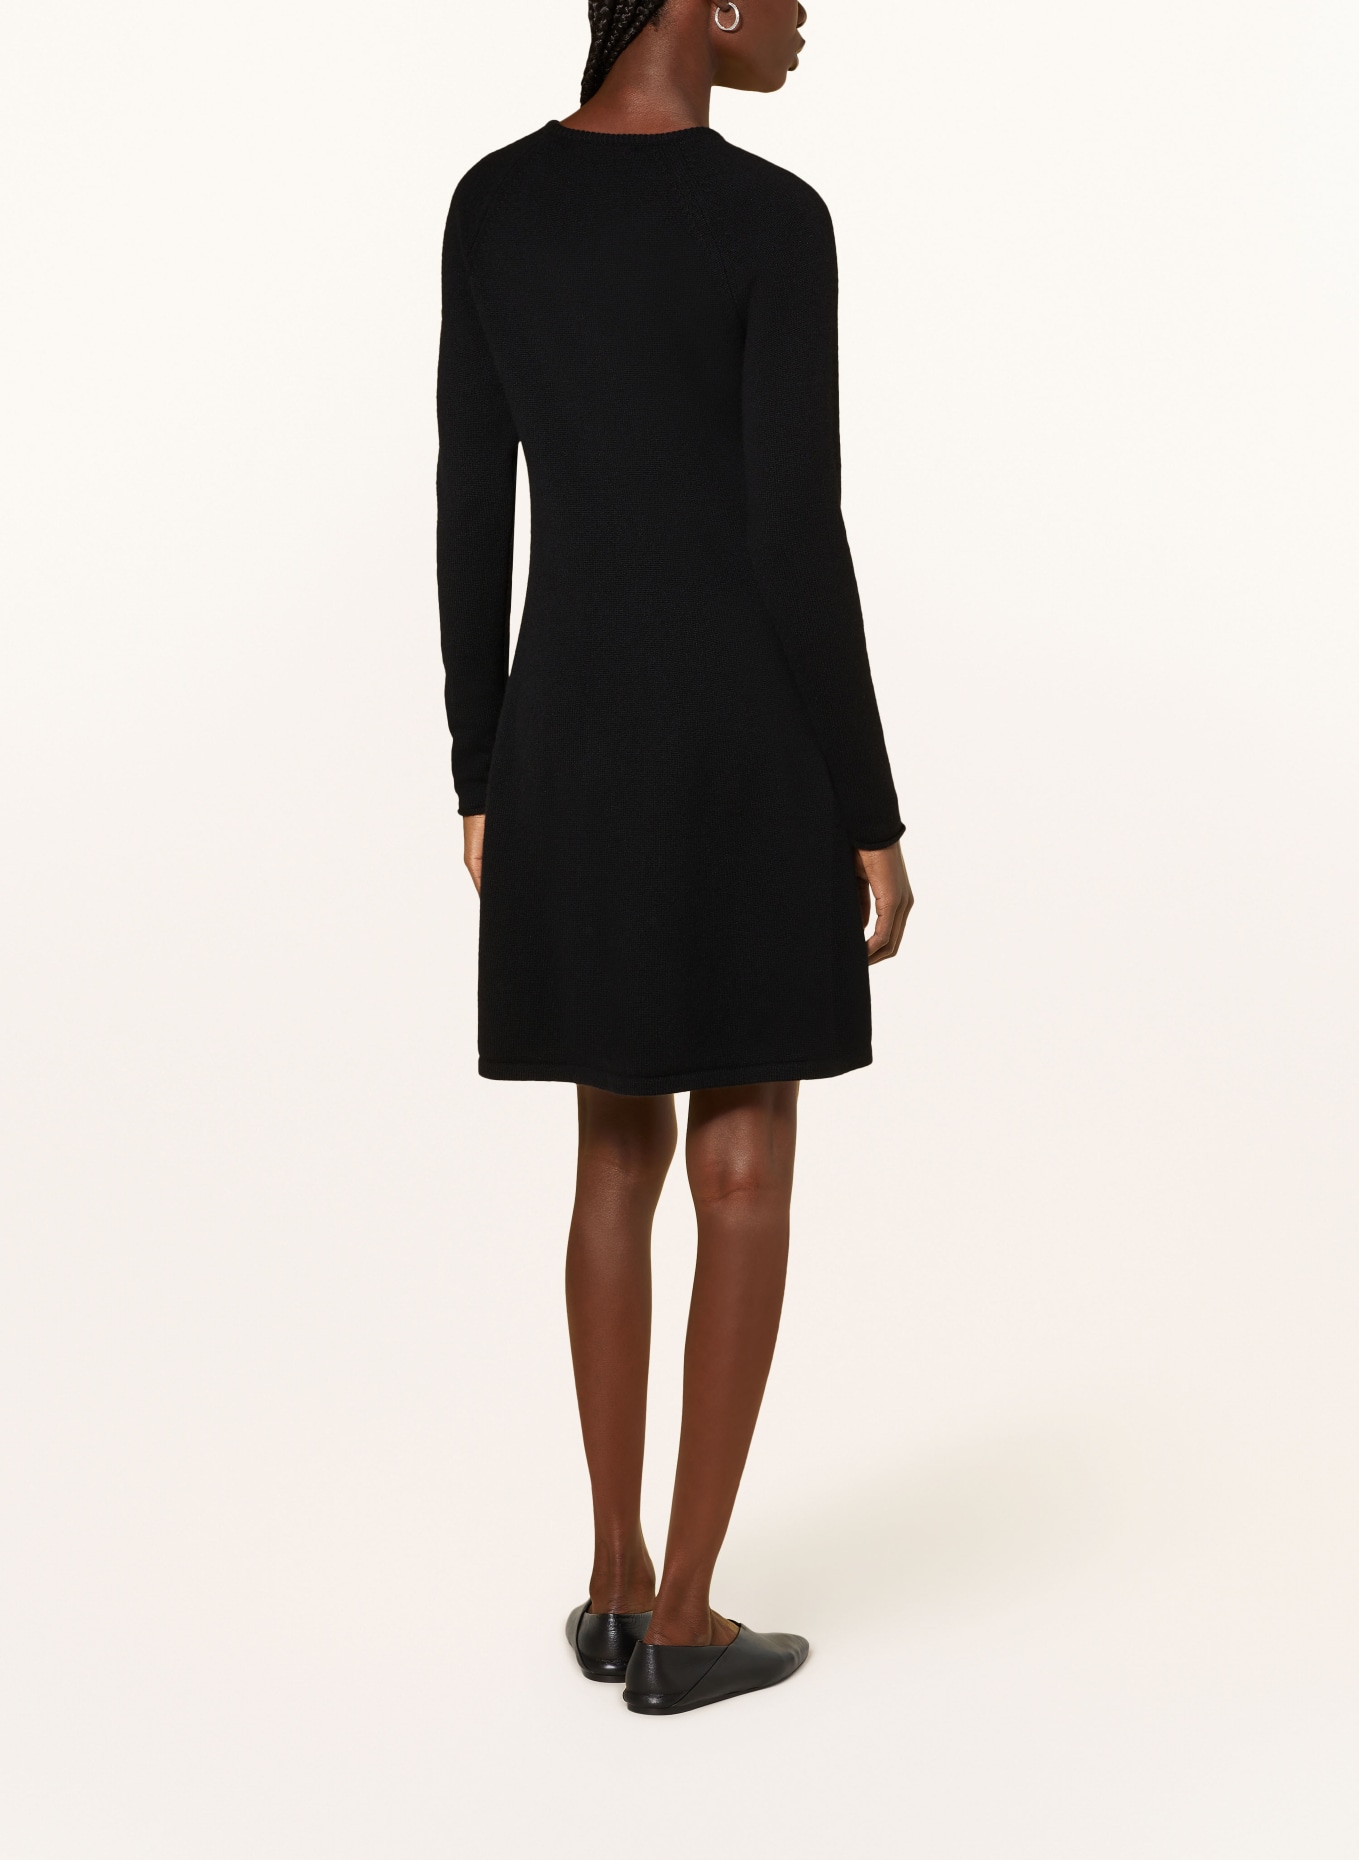 LISA YANG Cashmere knit dress, Color: BLACK (Image 3)